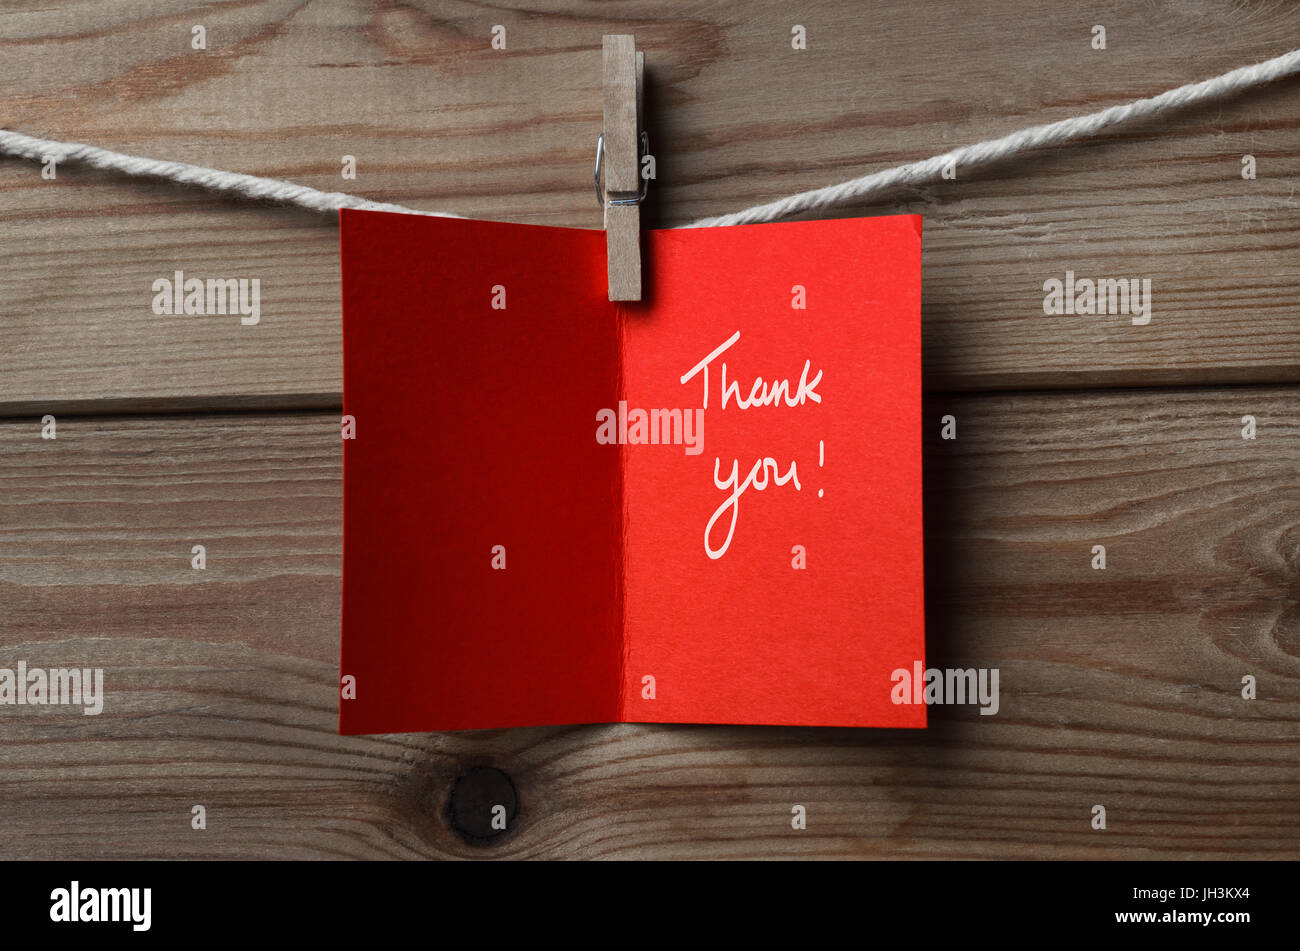 Eine rote Glückwunschkarte auf Zeichenfolge Holzbohle Hintergrund gekoppelt.  Geöffnet, um die Worte "Thank You" anzuzeigen. Stockfoto